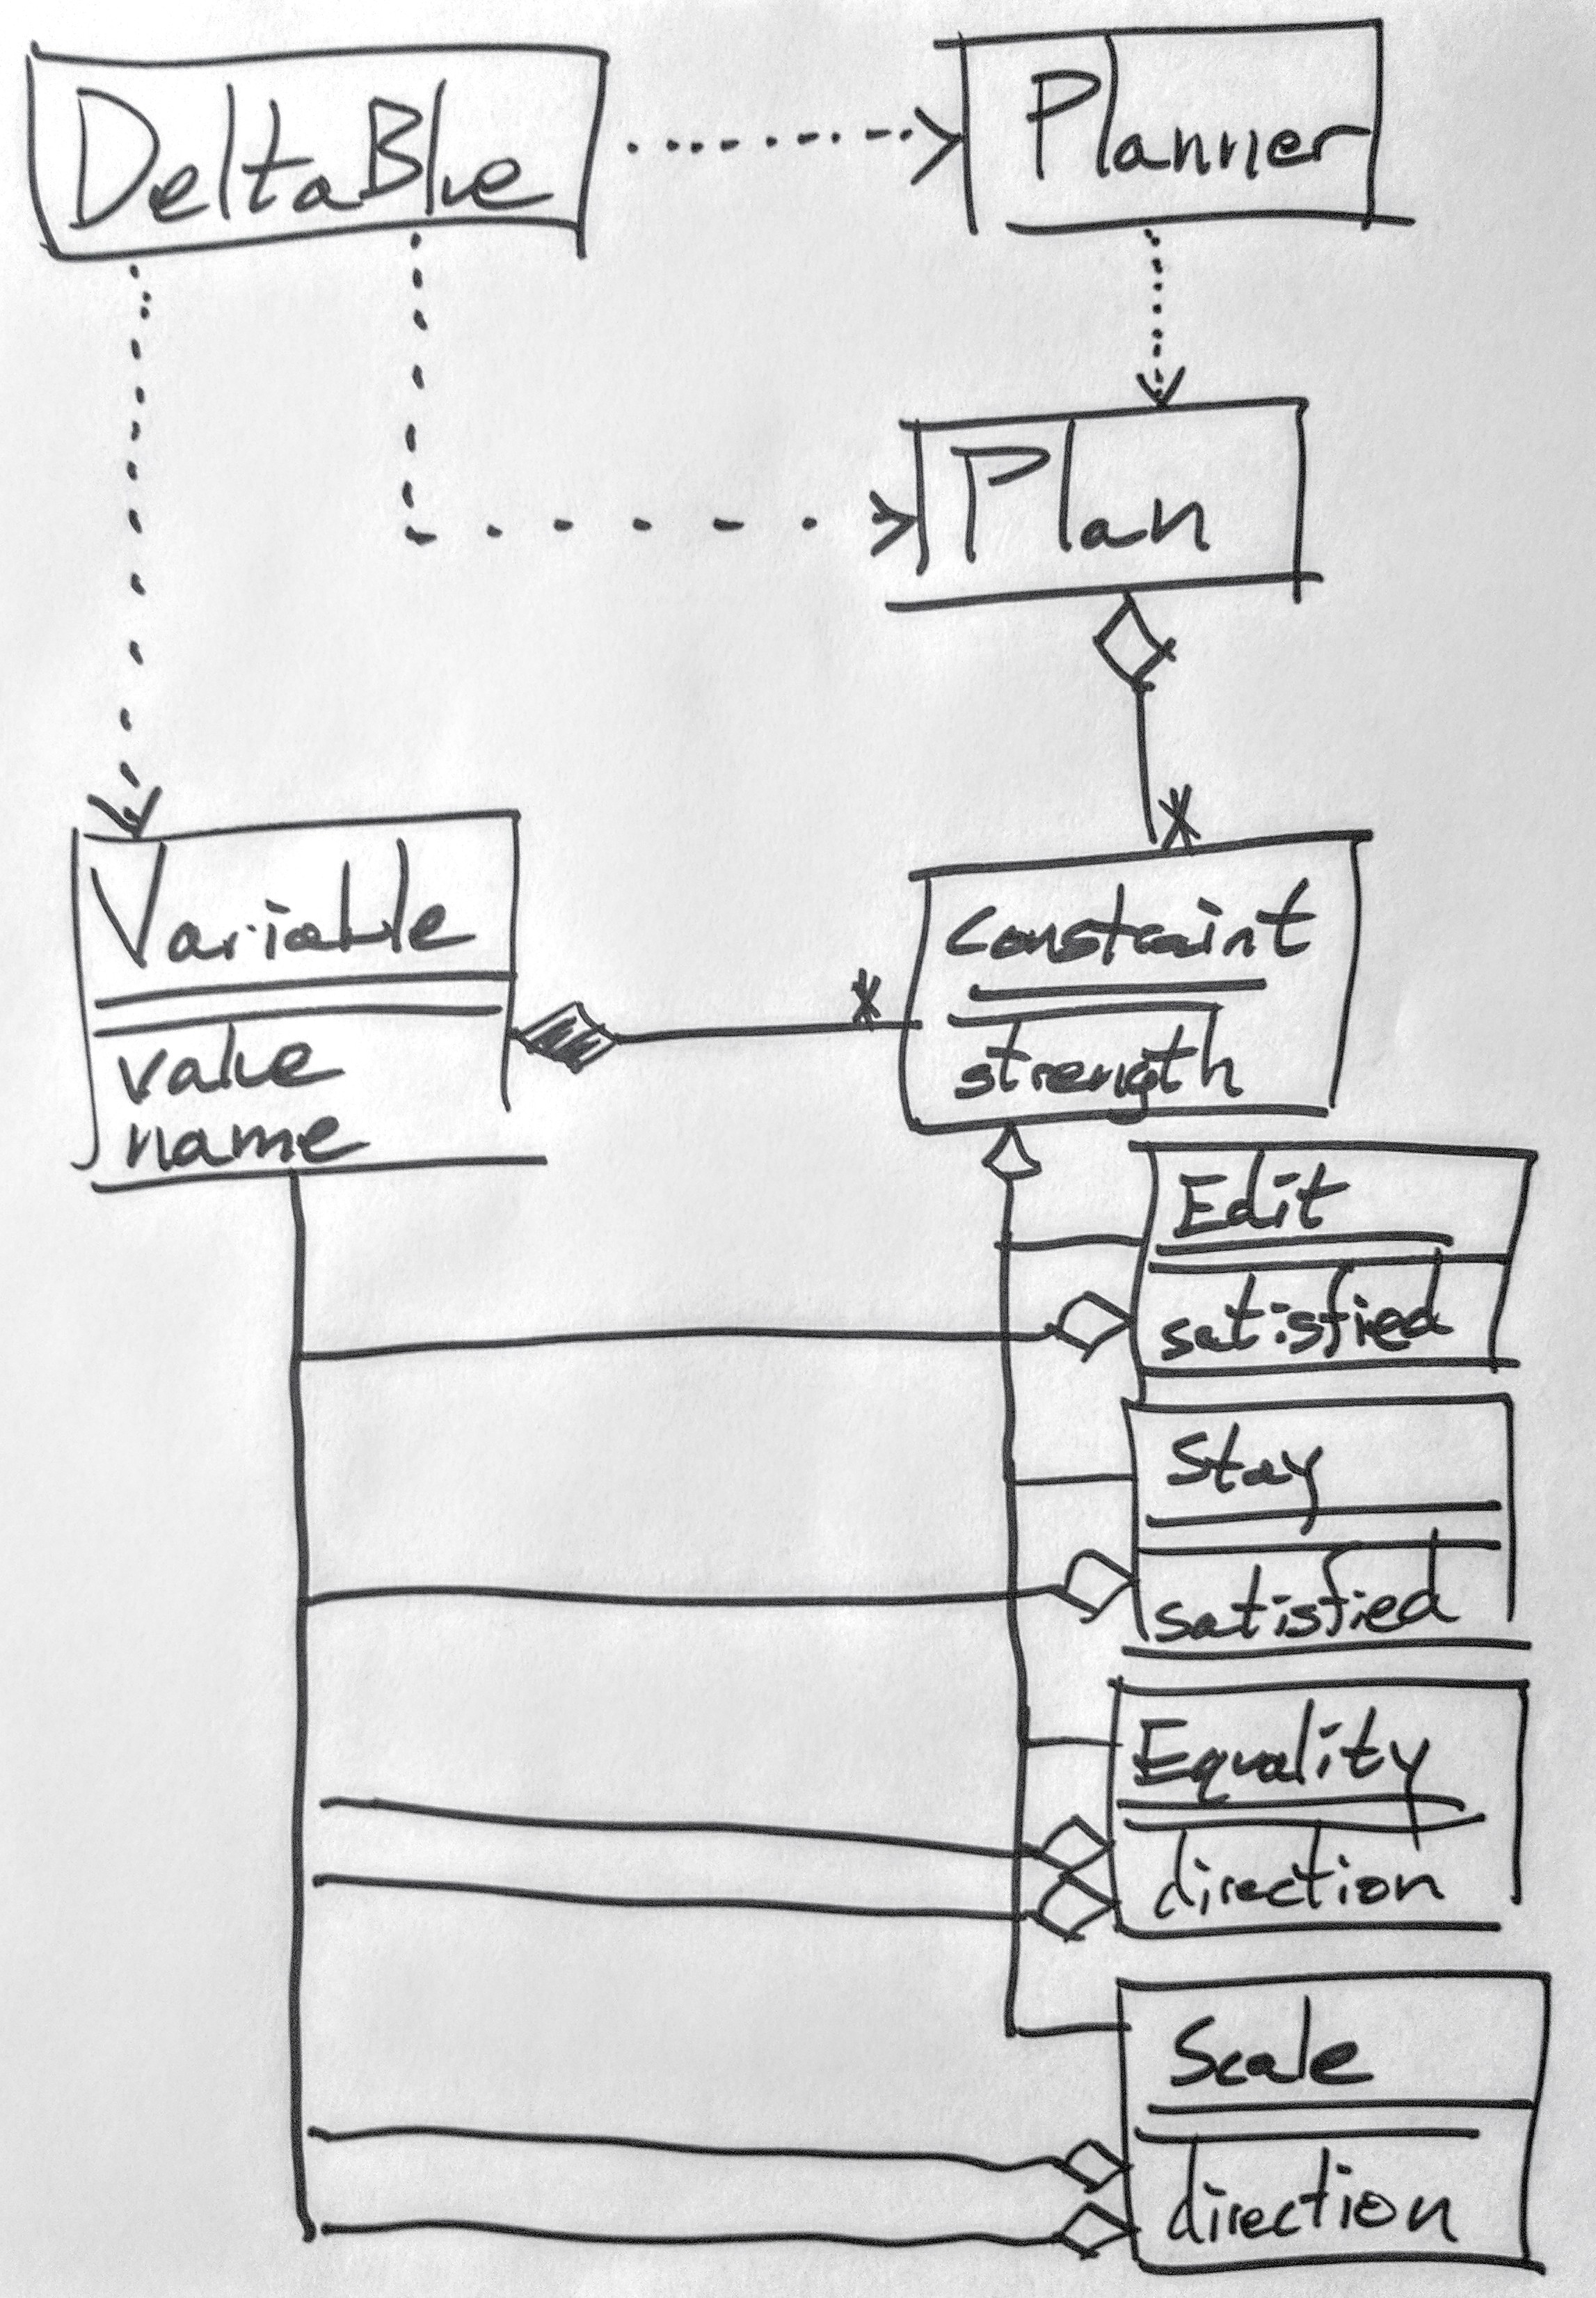 organized UML diagram of DeltaBlue